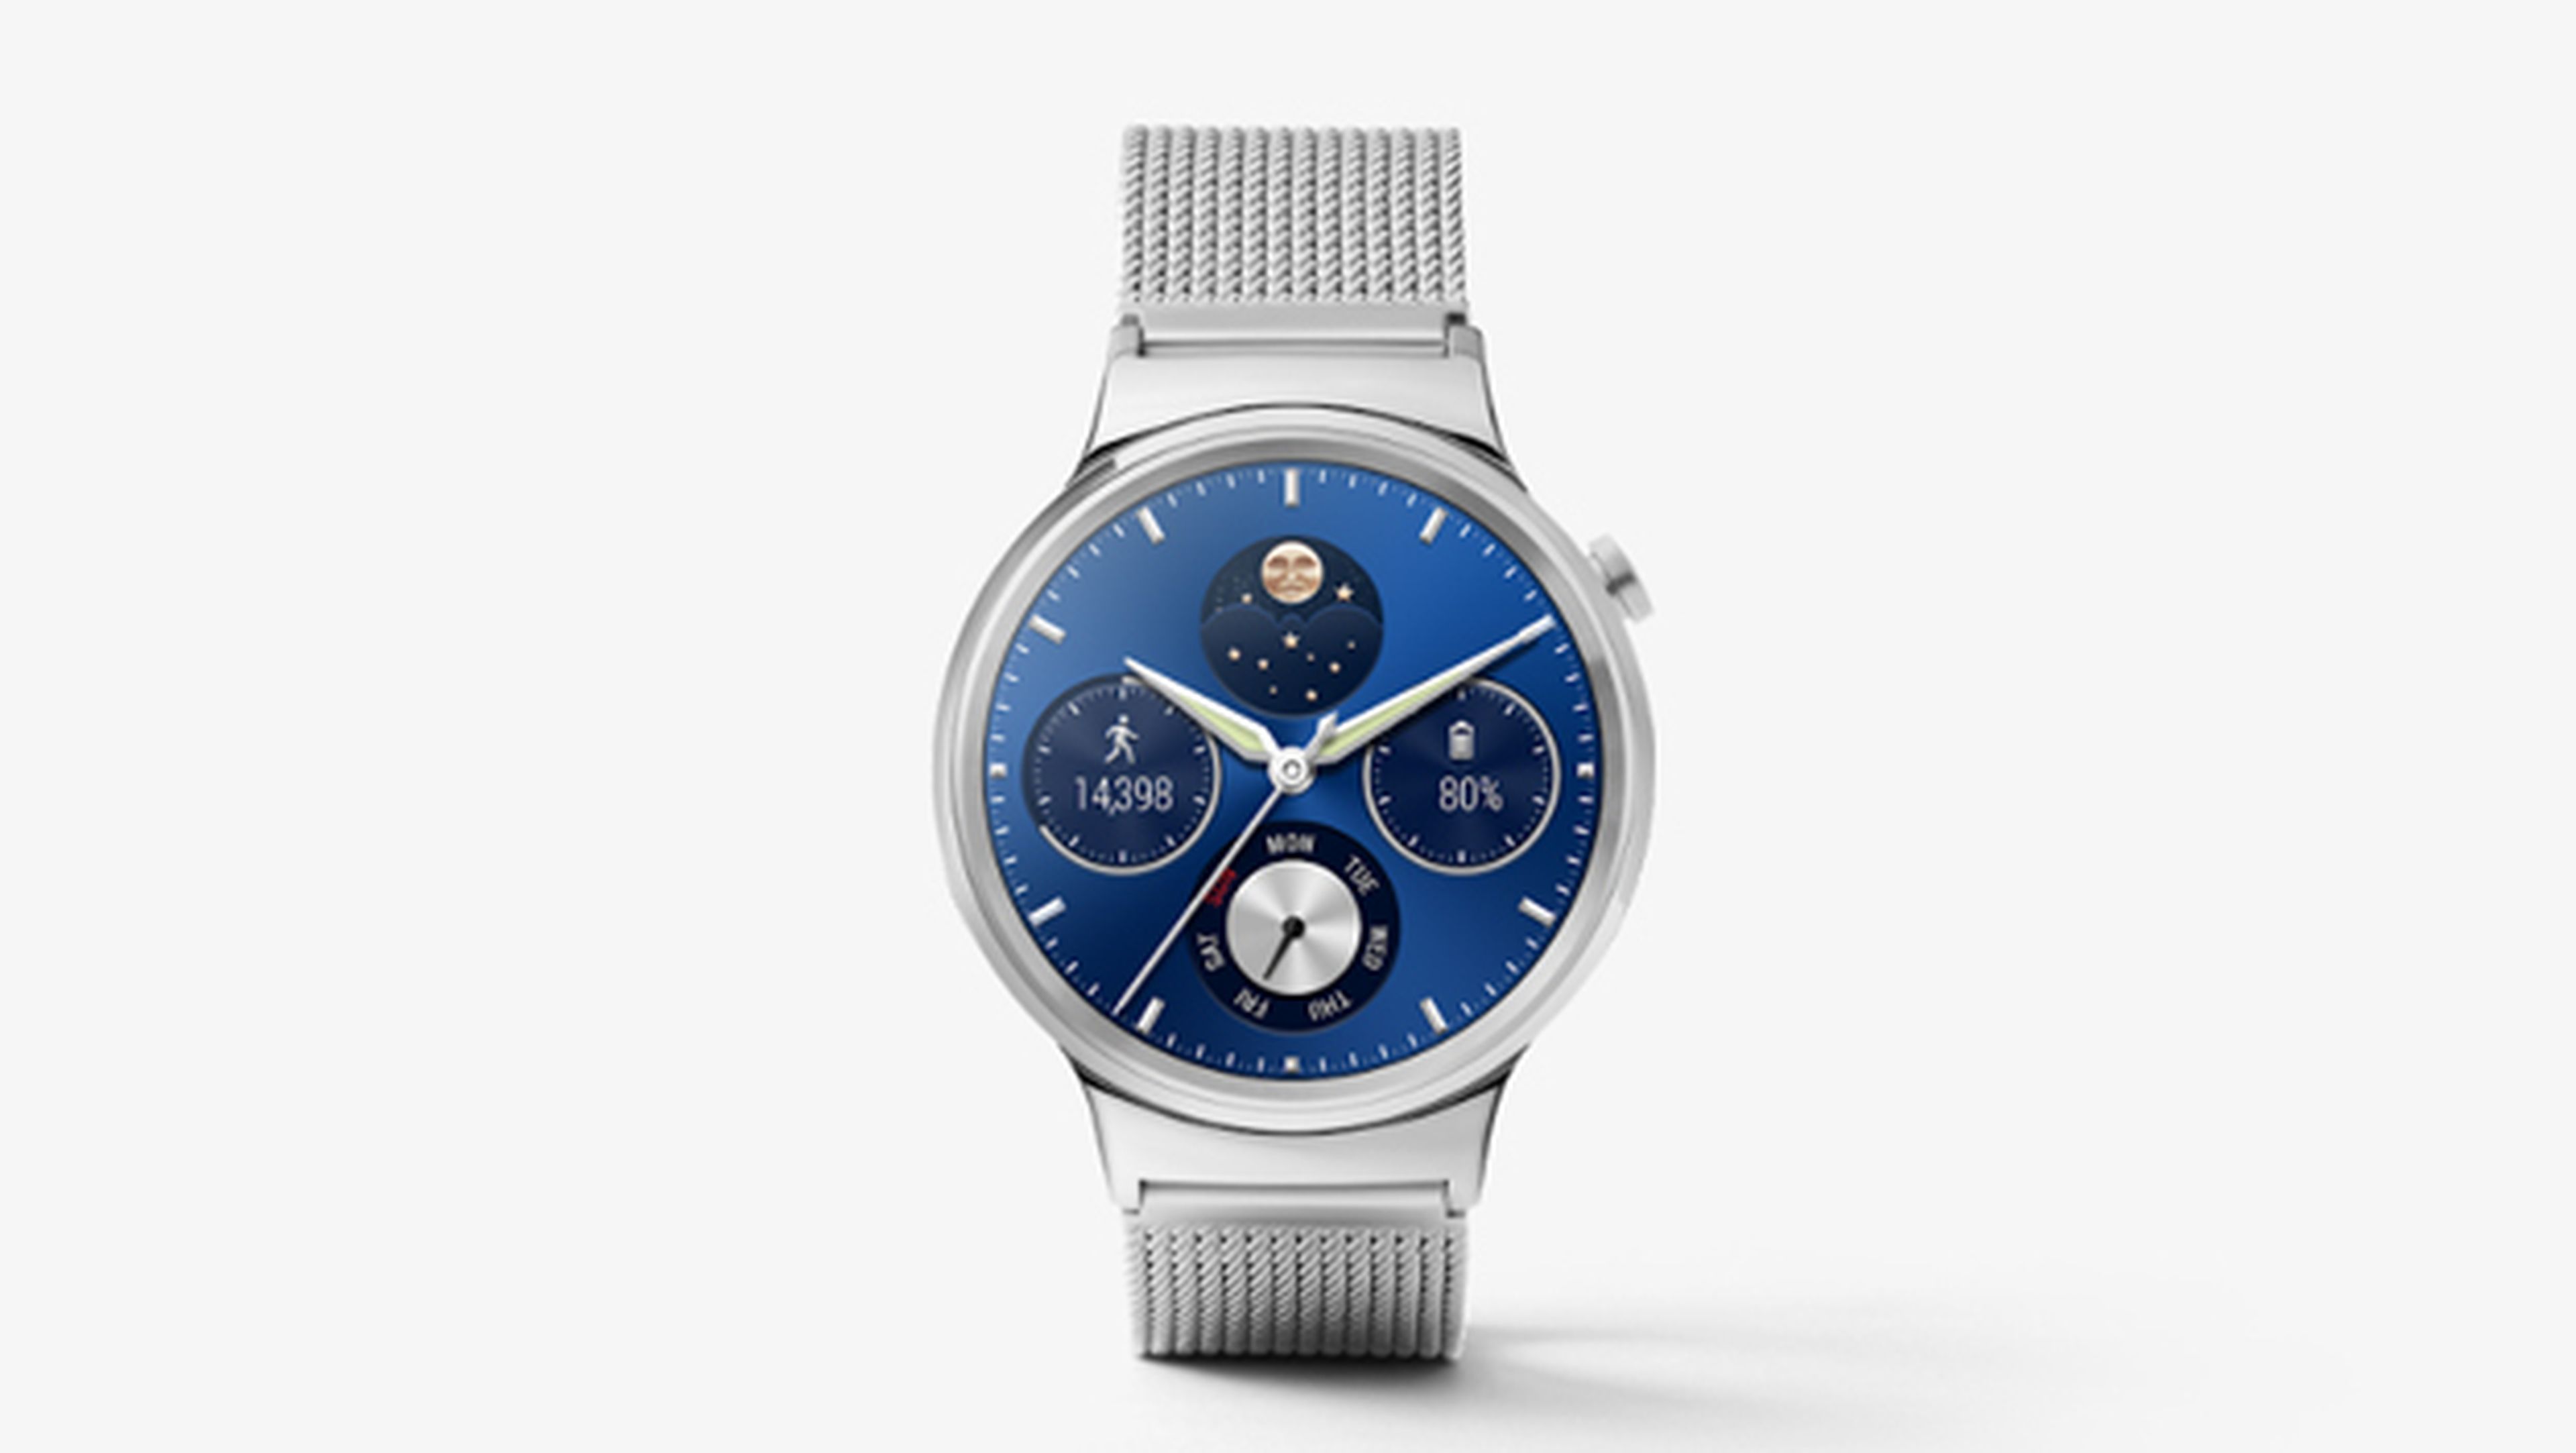 Oferta del Huawei Watch